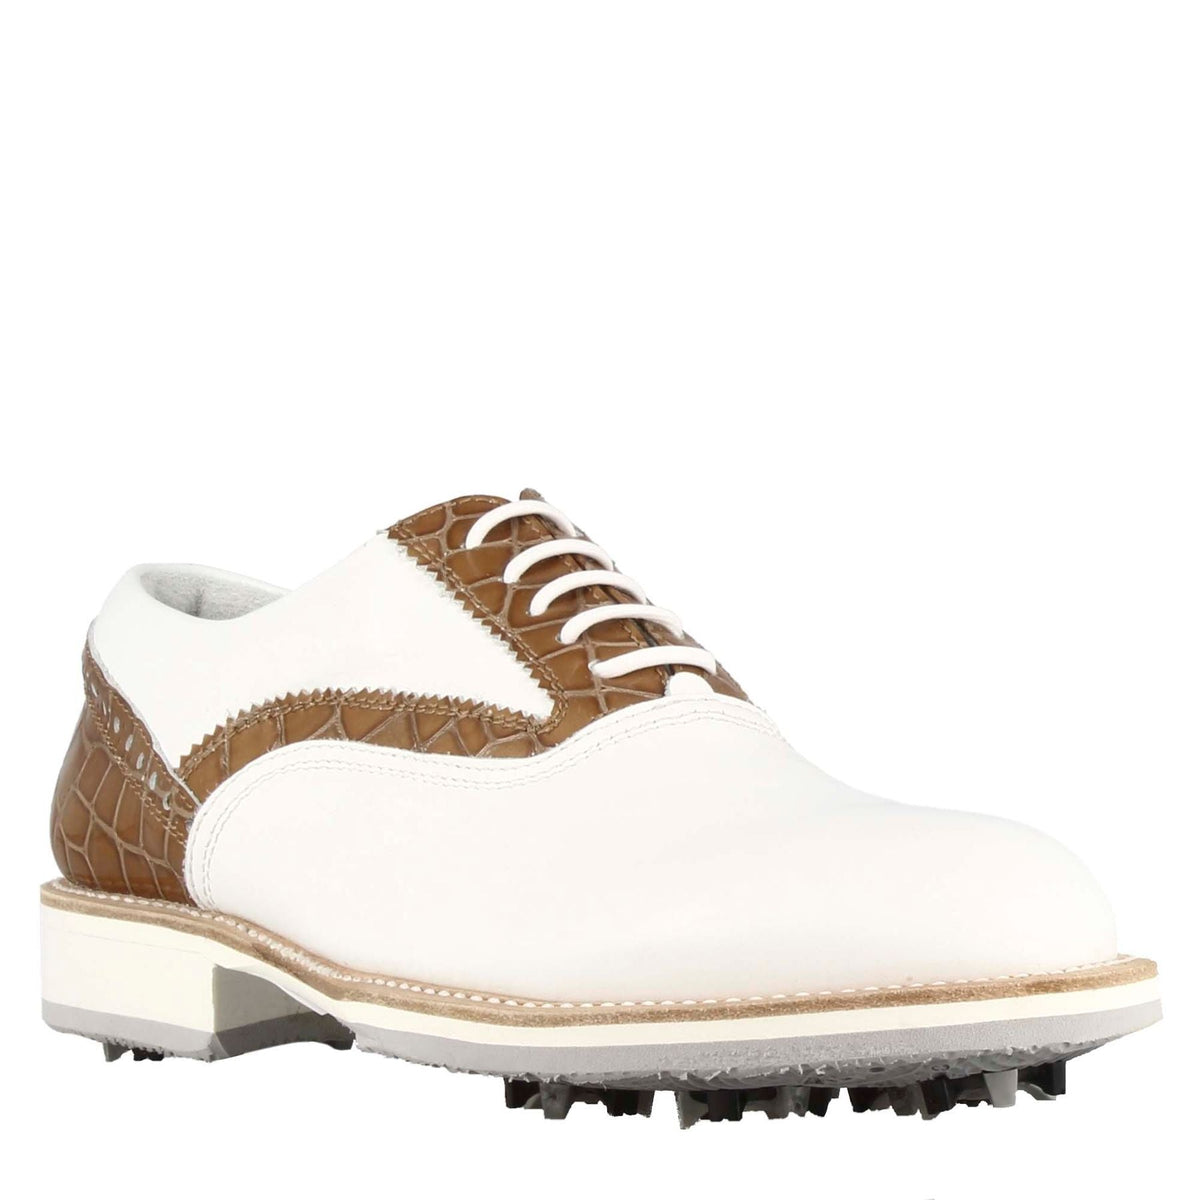 Handgefertigte Herren-Golfschuhe aus weißem Leder mit hellbraunen Details